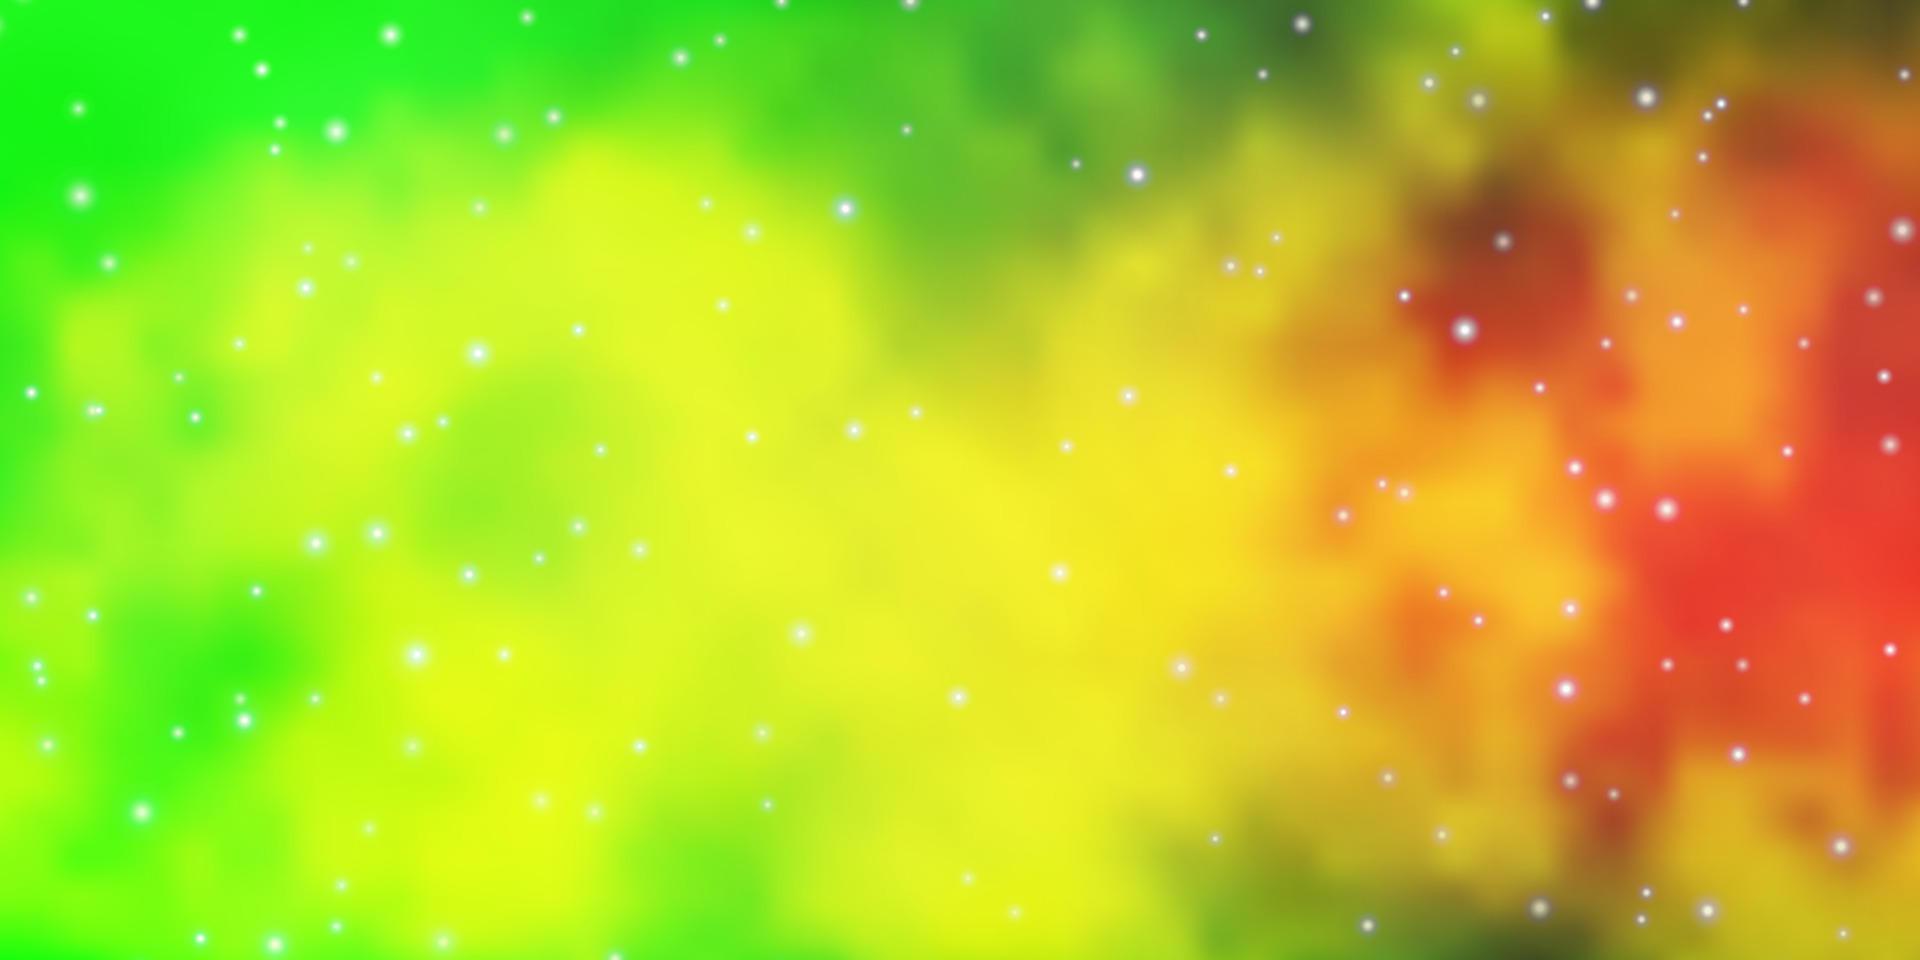 ljusgrön, gul vektorstruktur med vackra stjärnor. vektor